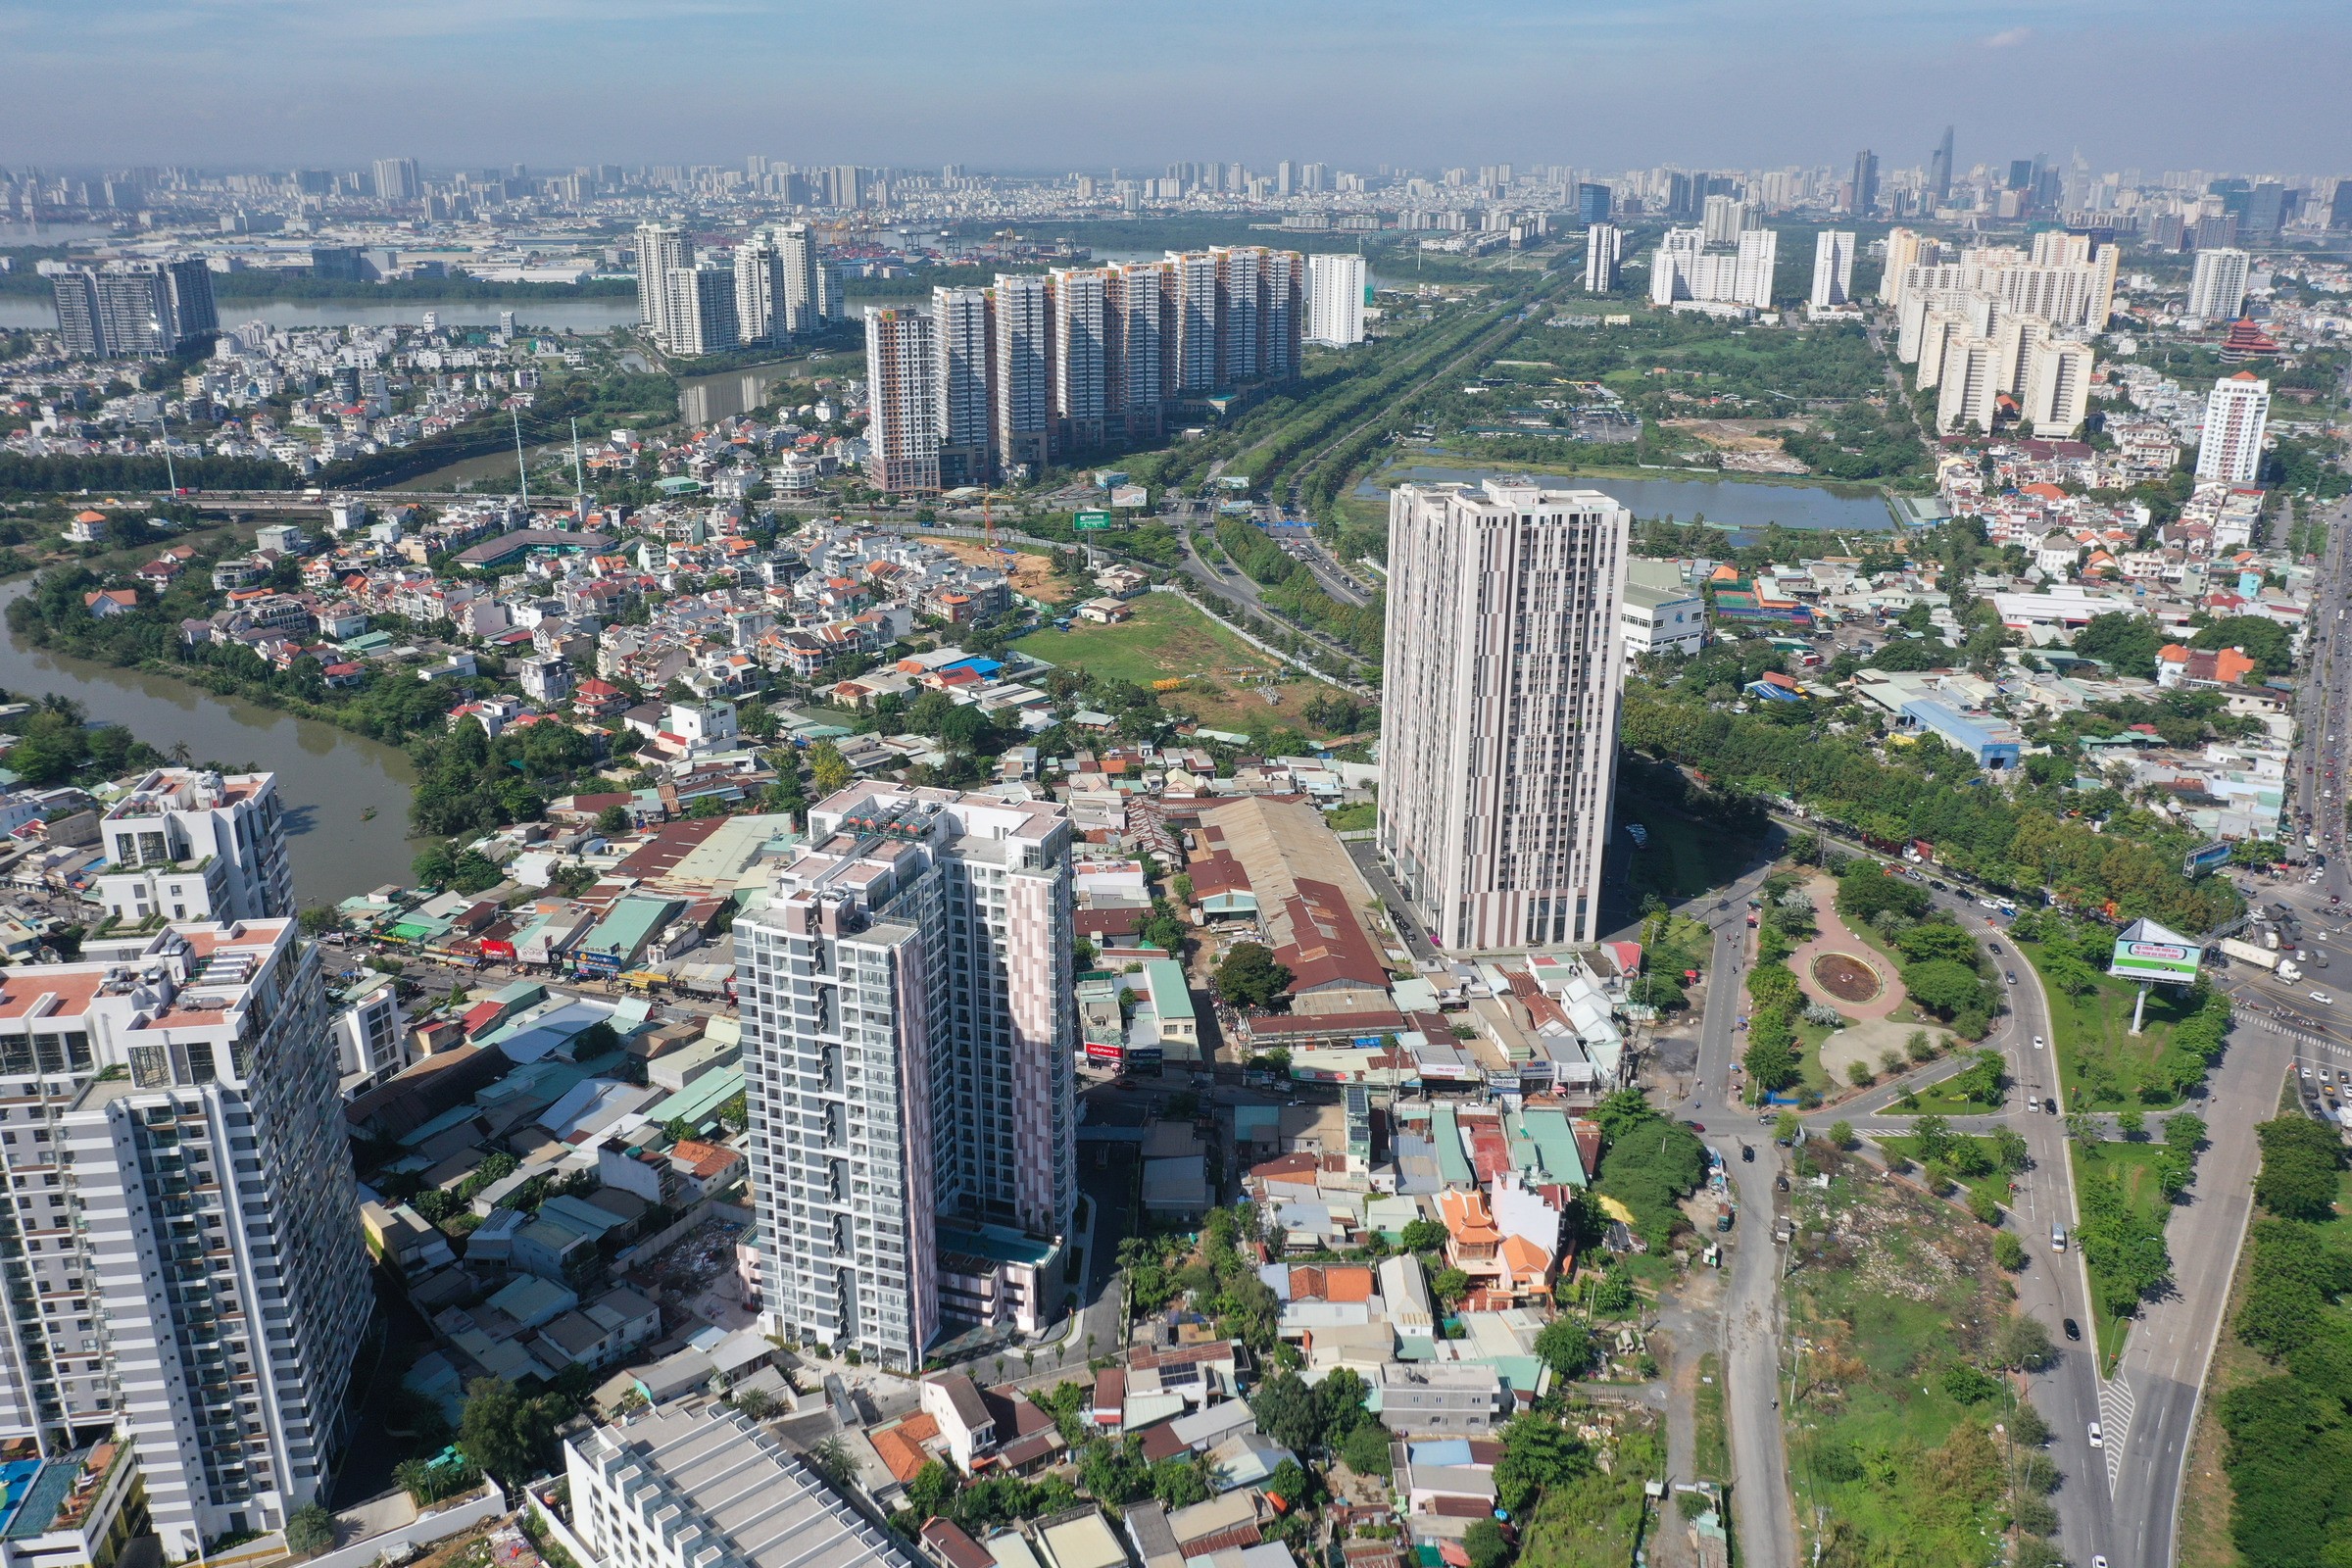 
Hoạt động kinh doanh bất động sản của TP Hồ Chí Minh trong năm 2021 giảm 17,32%.
